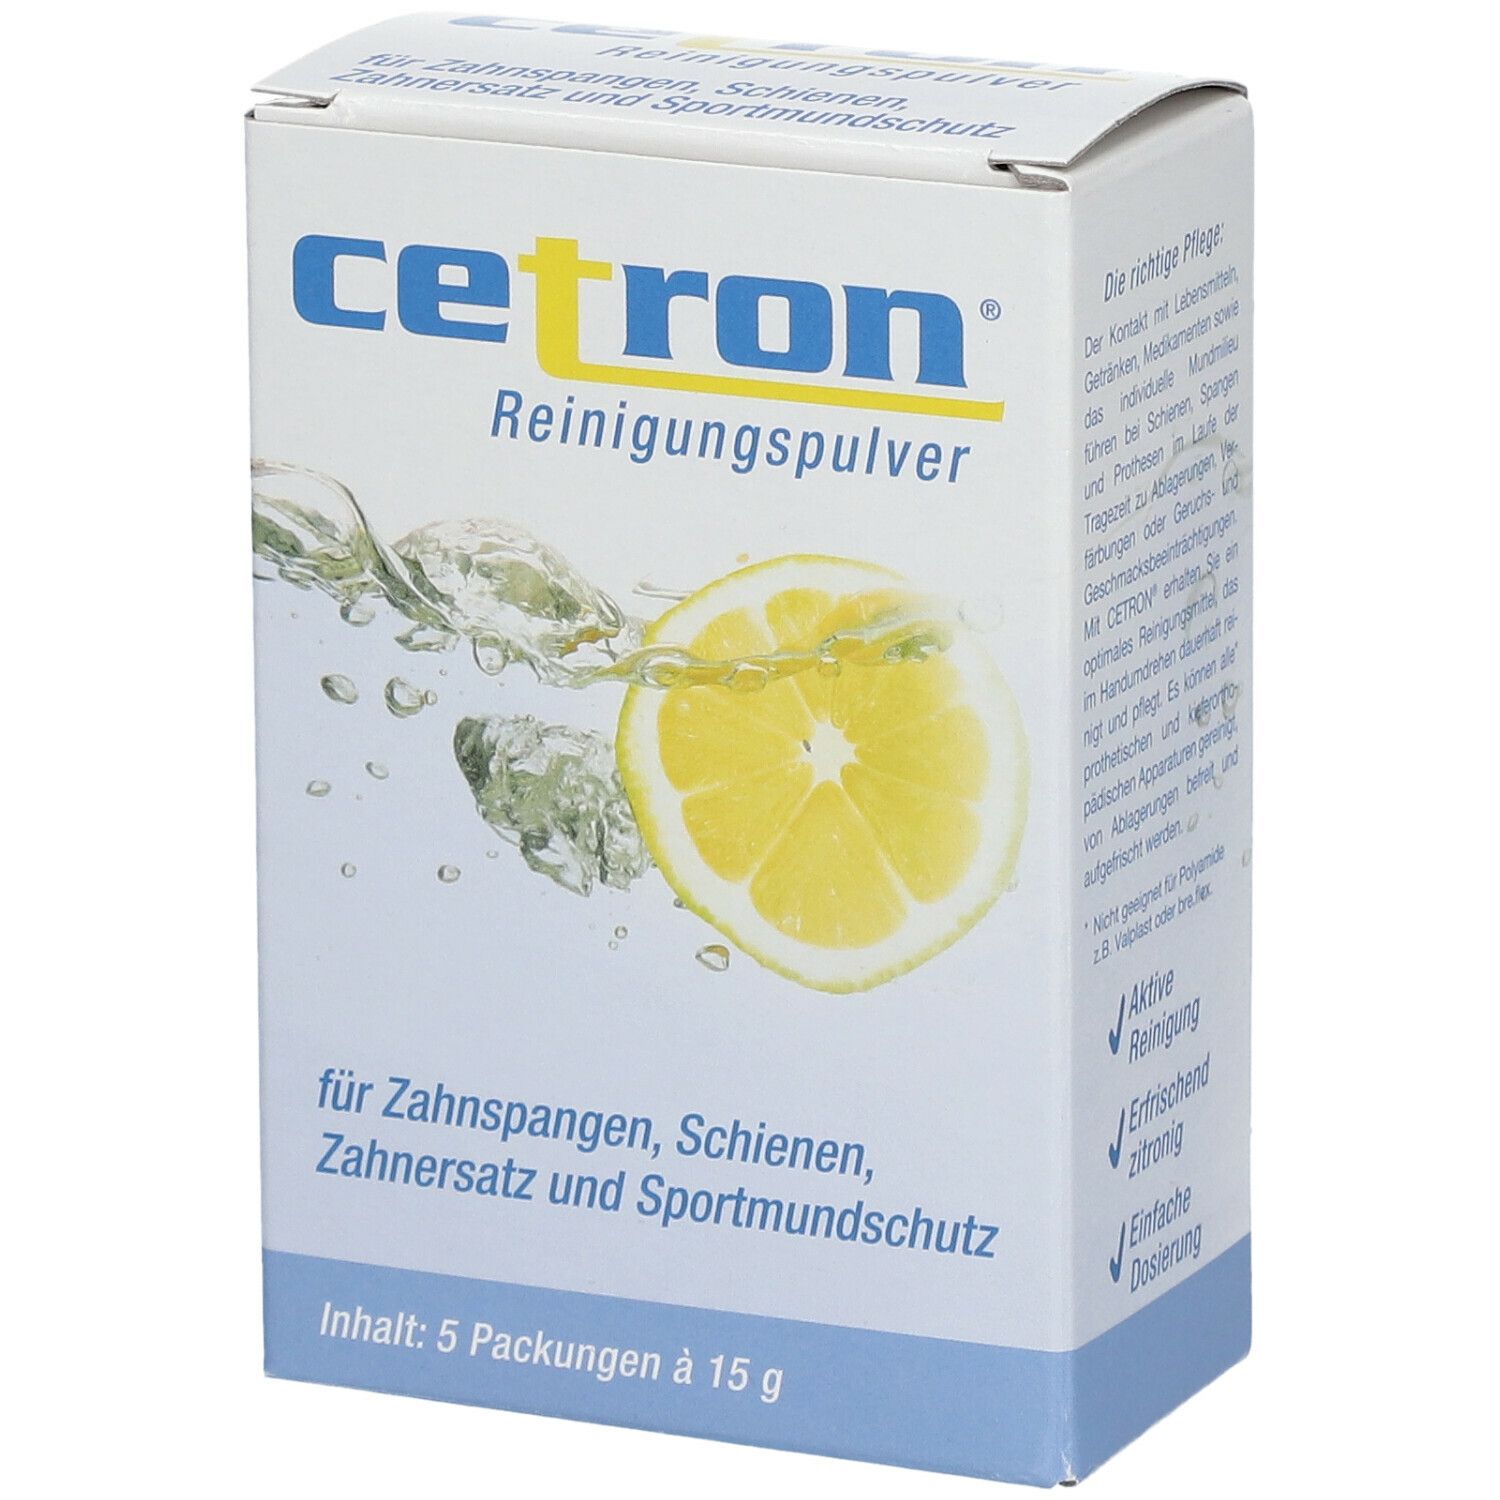 Cetron® Reinigungspulver thumbnail